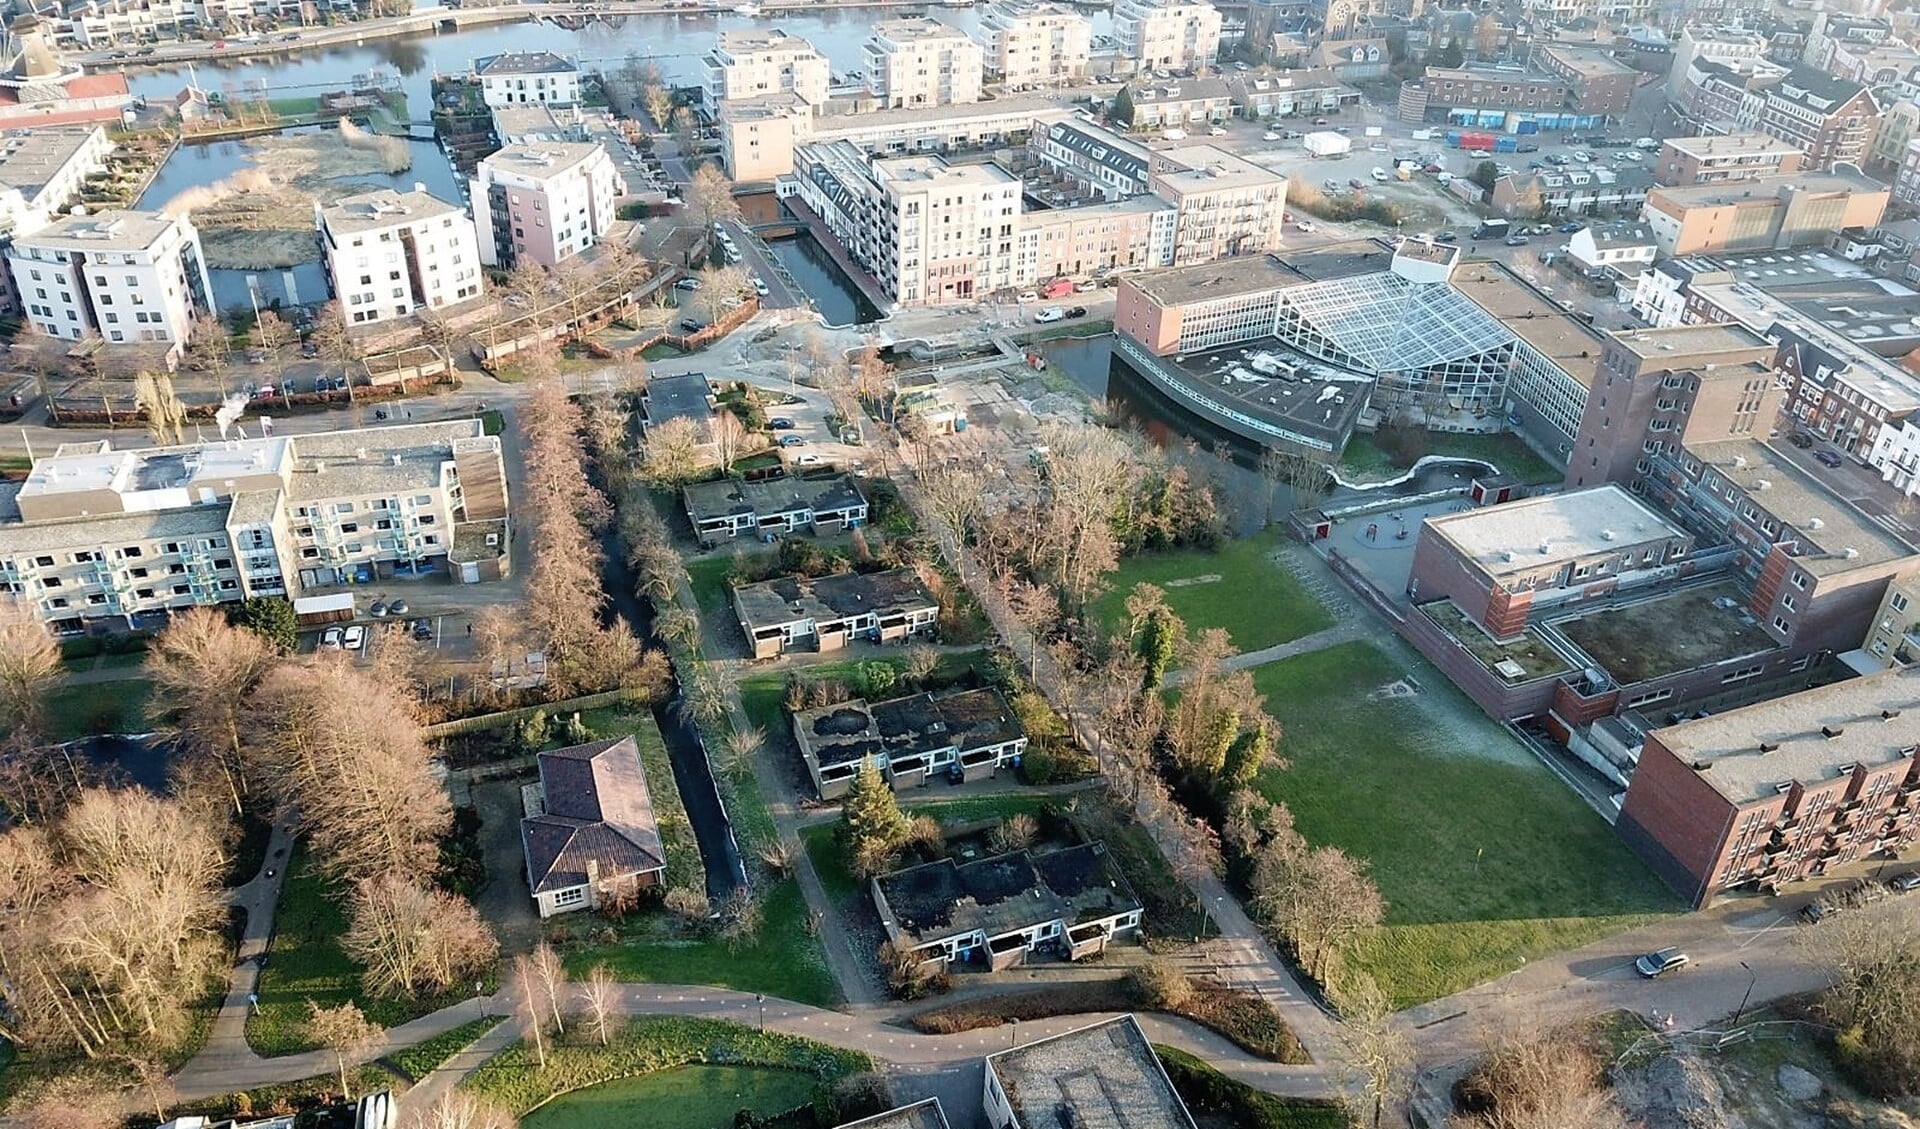 Het blok geschakelde woningen aan de Schoorlaan vanuit de lucht (foto: Boelens de Gruyter).